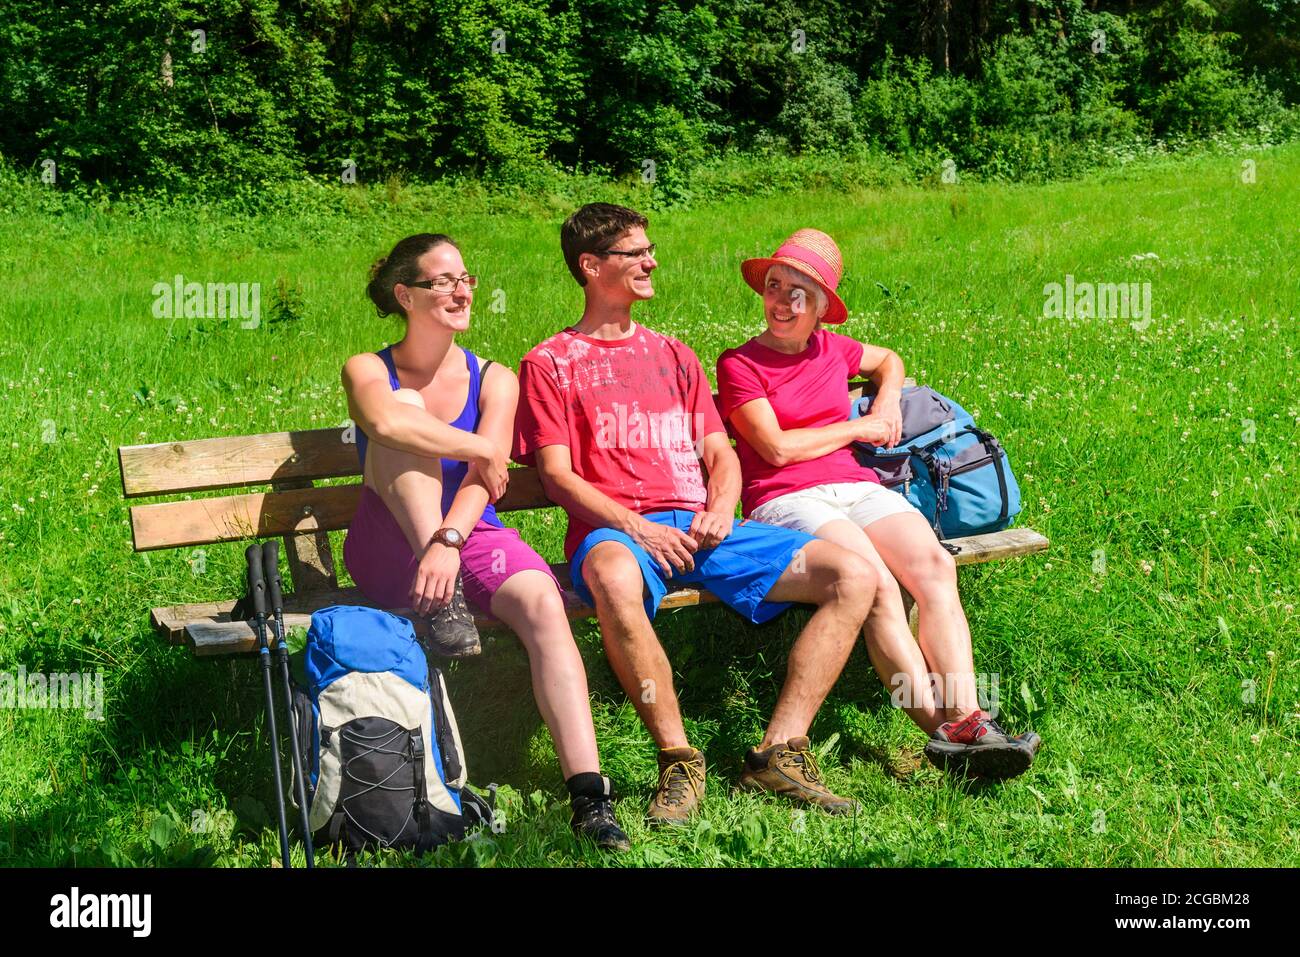 A hiking tour on a warm summer day at the idyllic Wertach near Wald im Allgäu Stock Photo